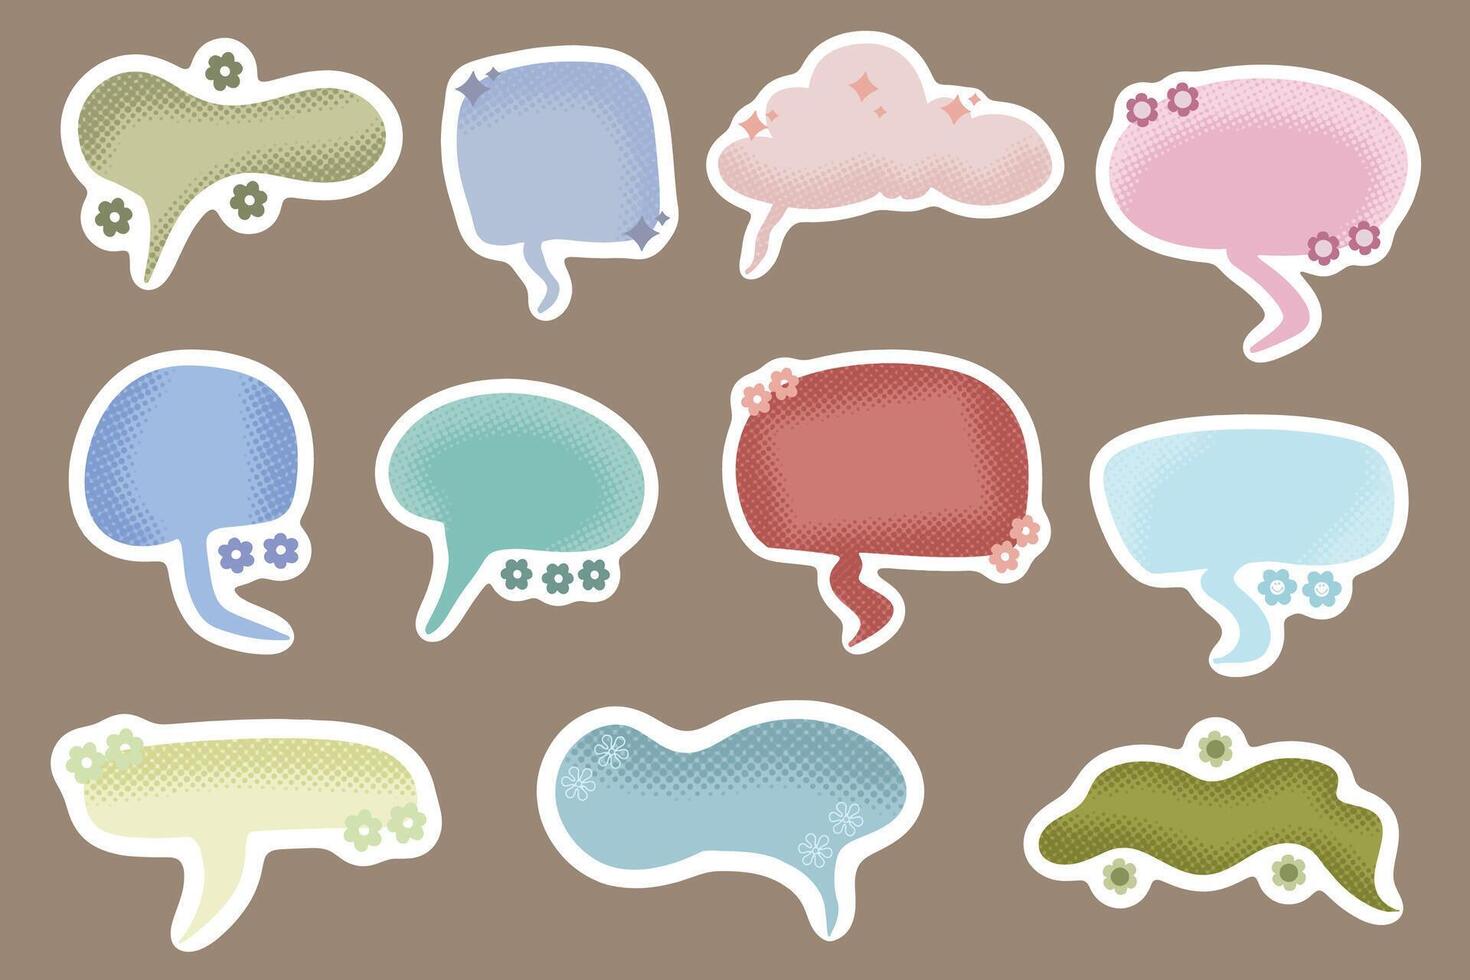 Cute Bubble Chat Sticker Clip Art vector